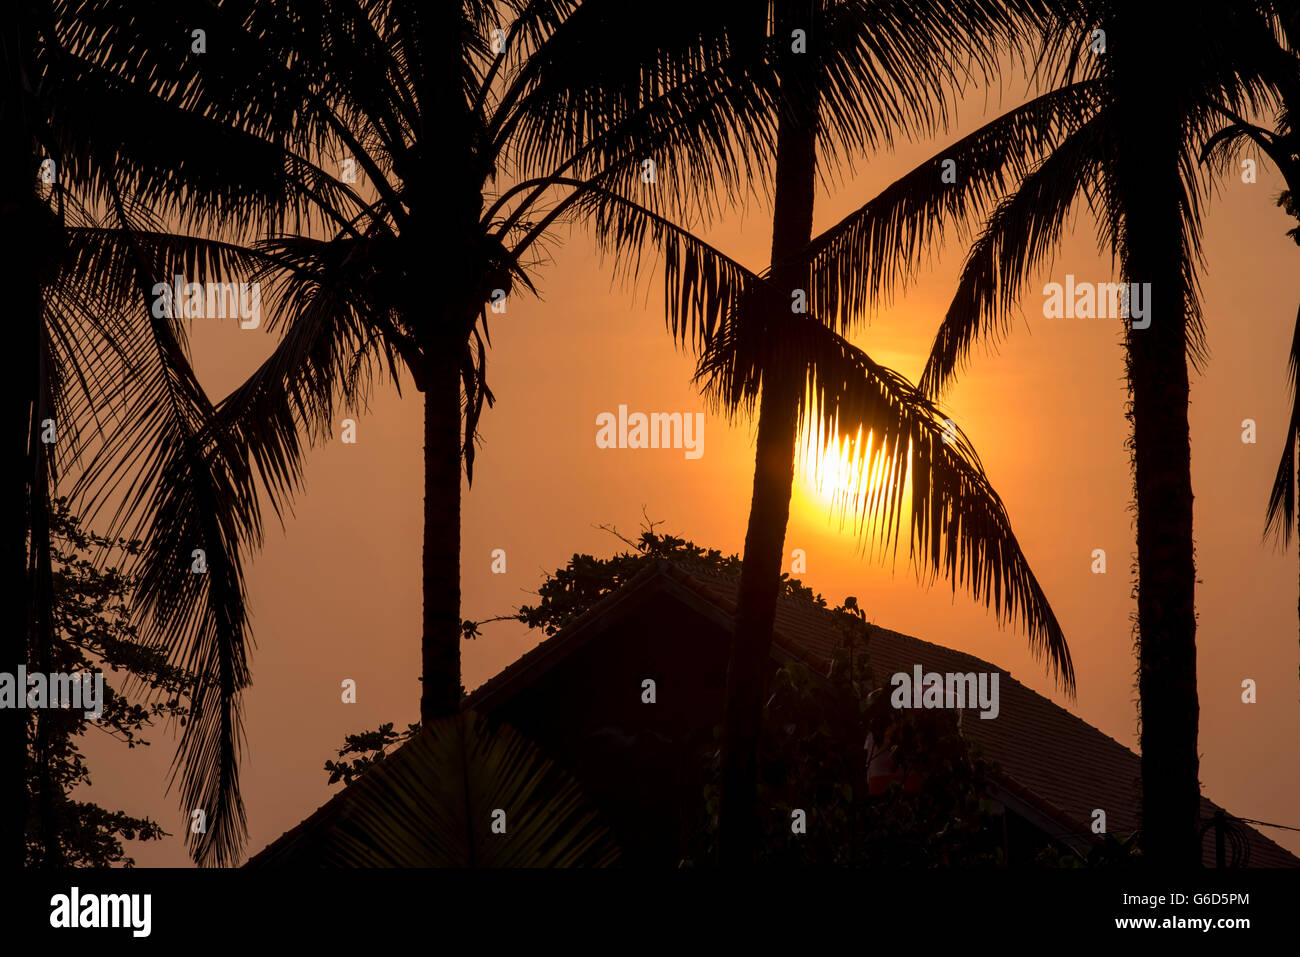 Architektur Detail der Strand Hausdach auf Sommer Sonnenuntergang mit Palmen Baum Blatt Silhouetten und friedliche Sonnenschein Goldgrund Stockfoto